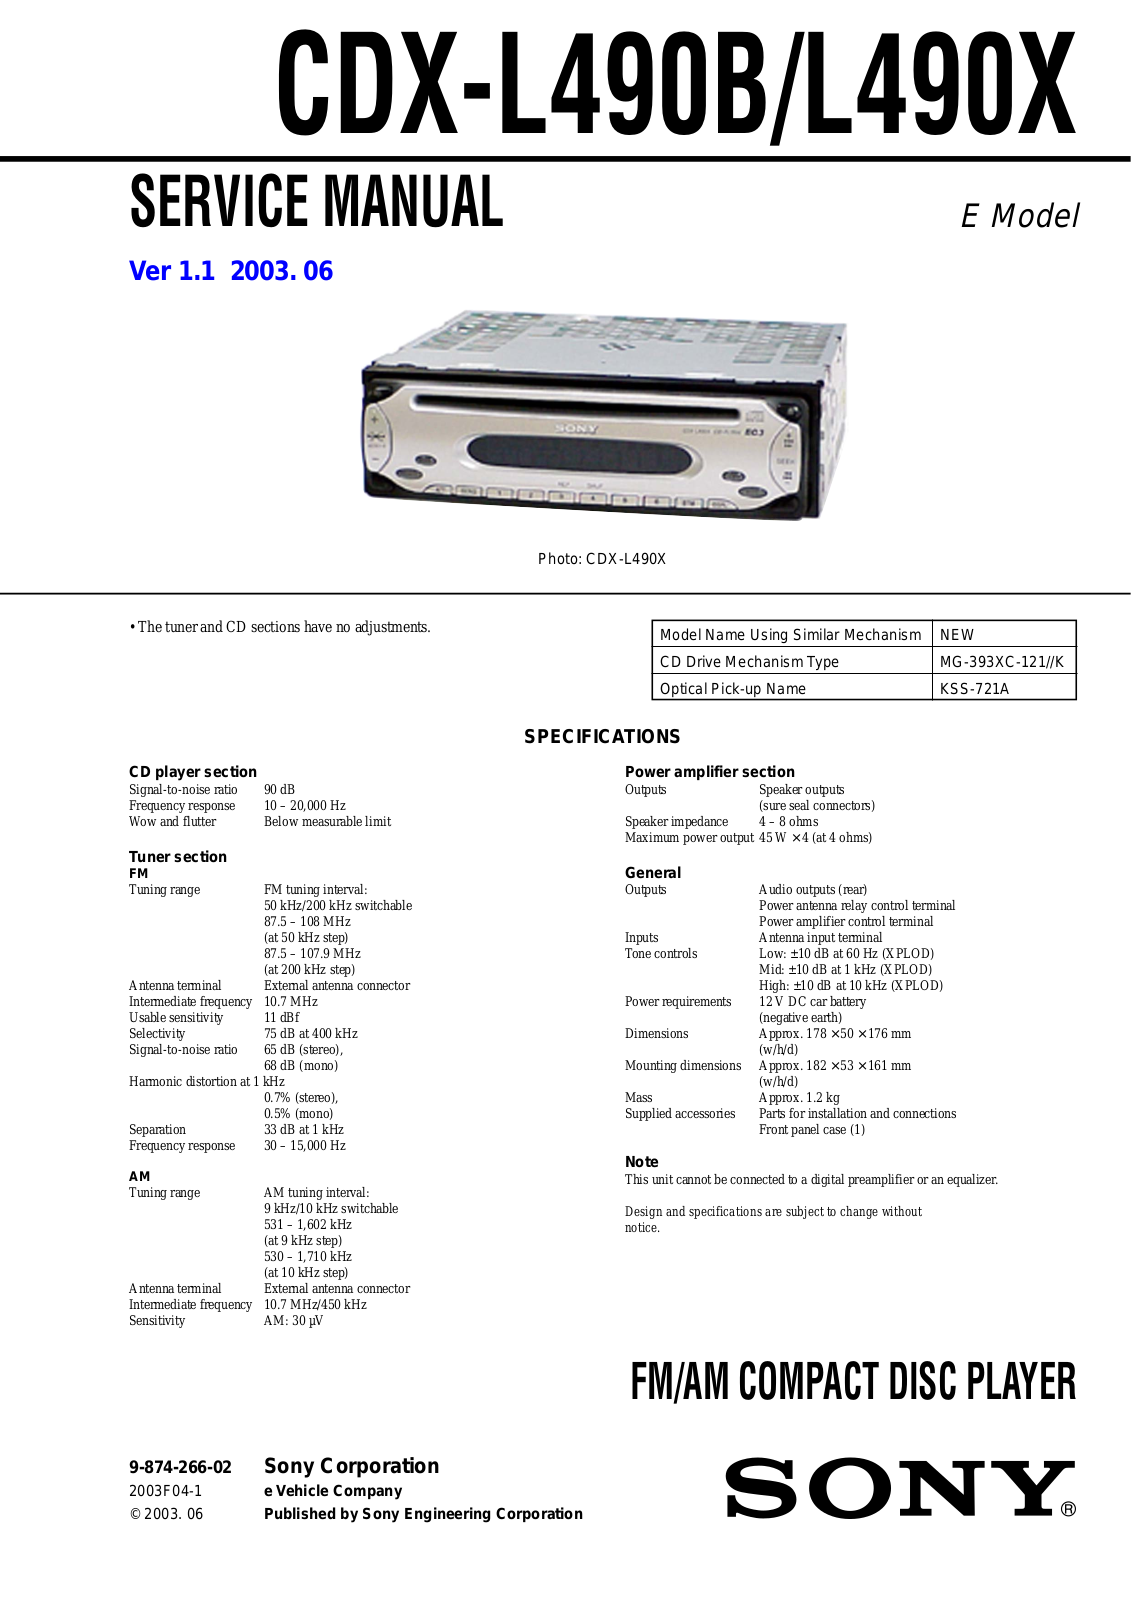 SONY CDX-L490B, CDX- L490X Service Manual